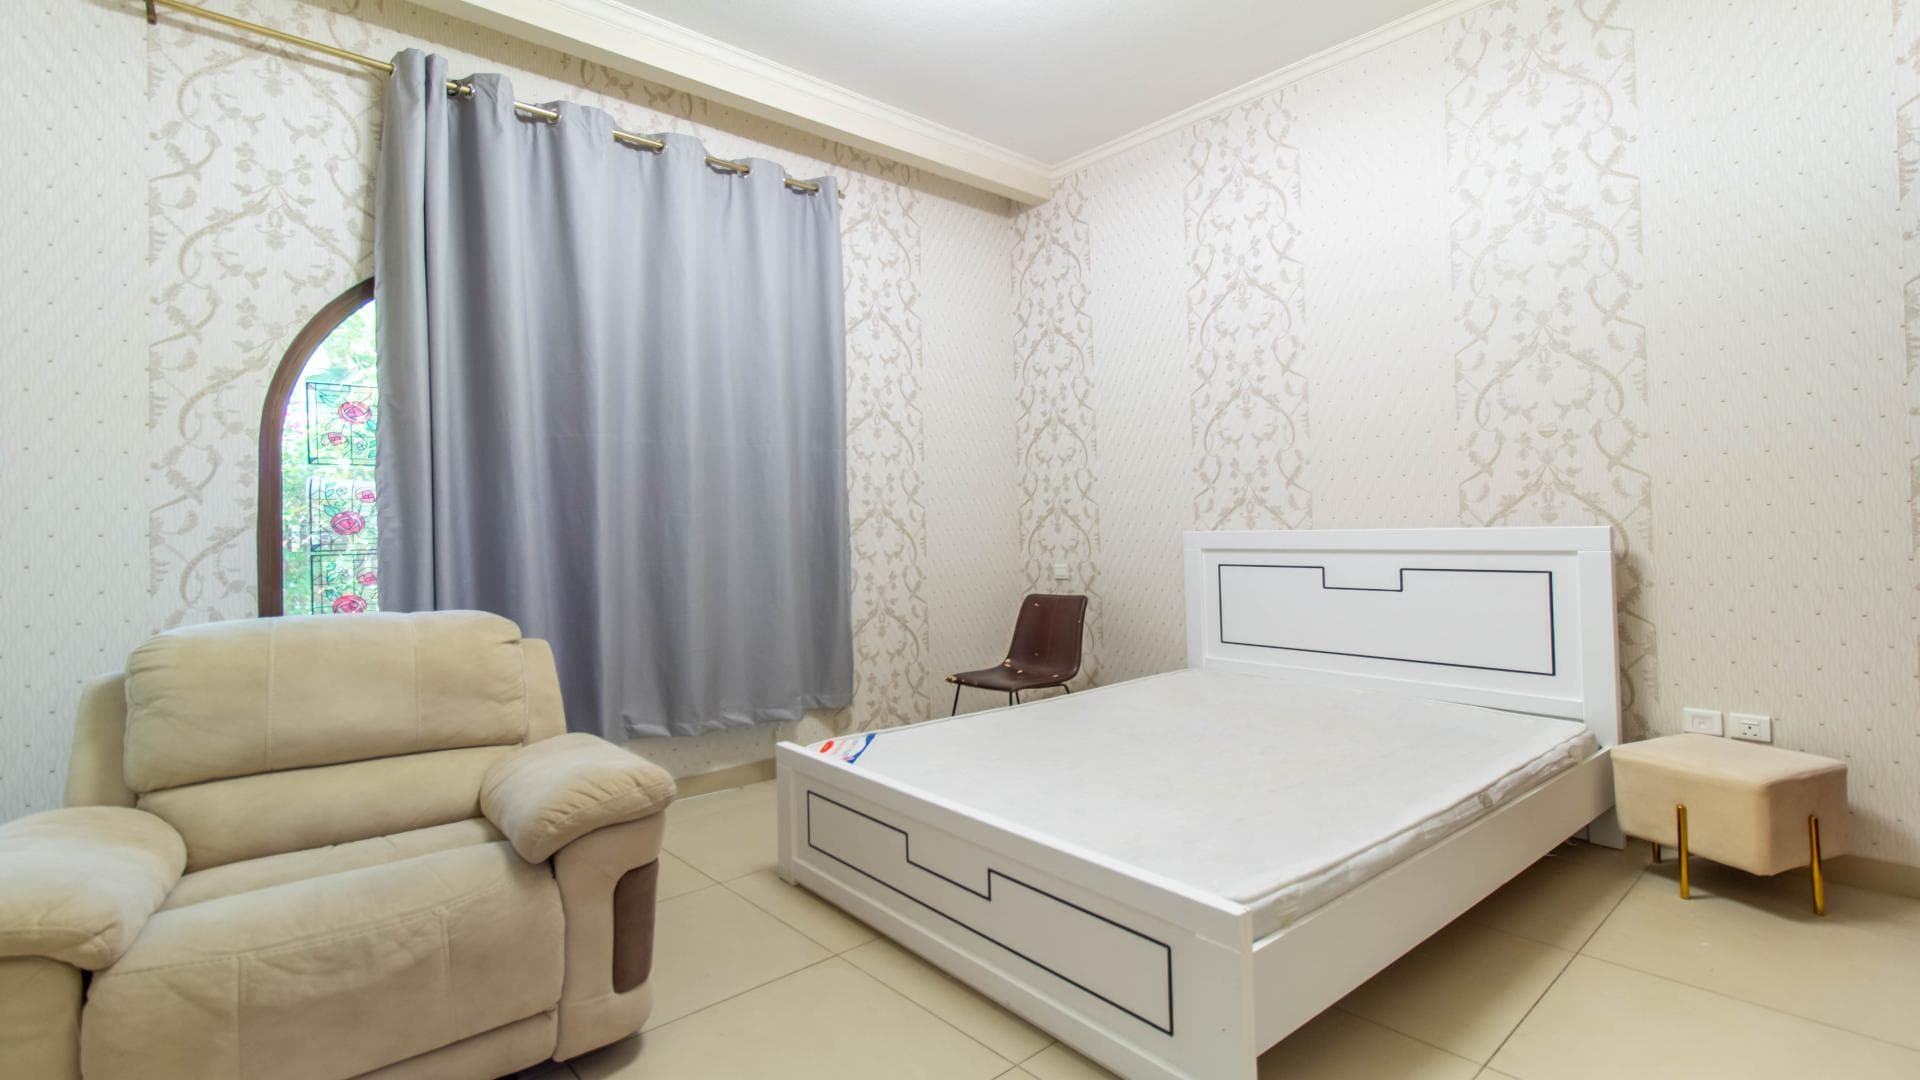 4 Bedroom Villa For Rent Building B Lp14479 E1998a1b7836180.jpg